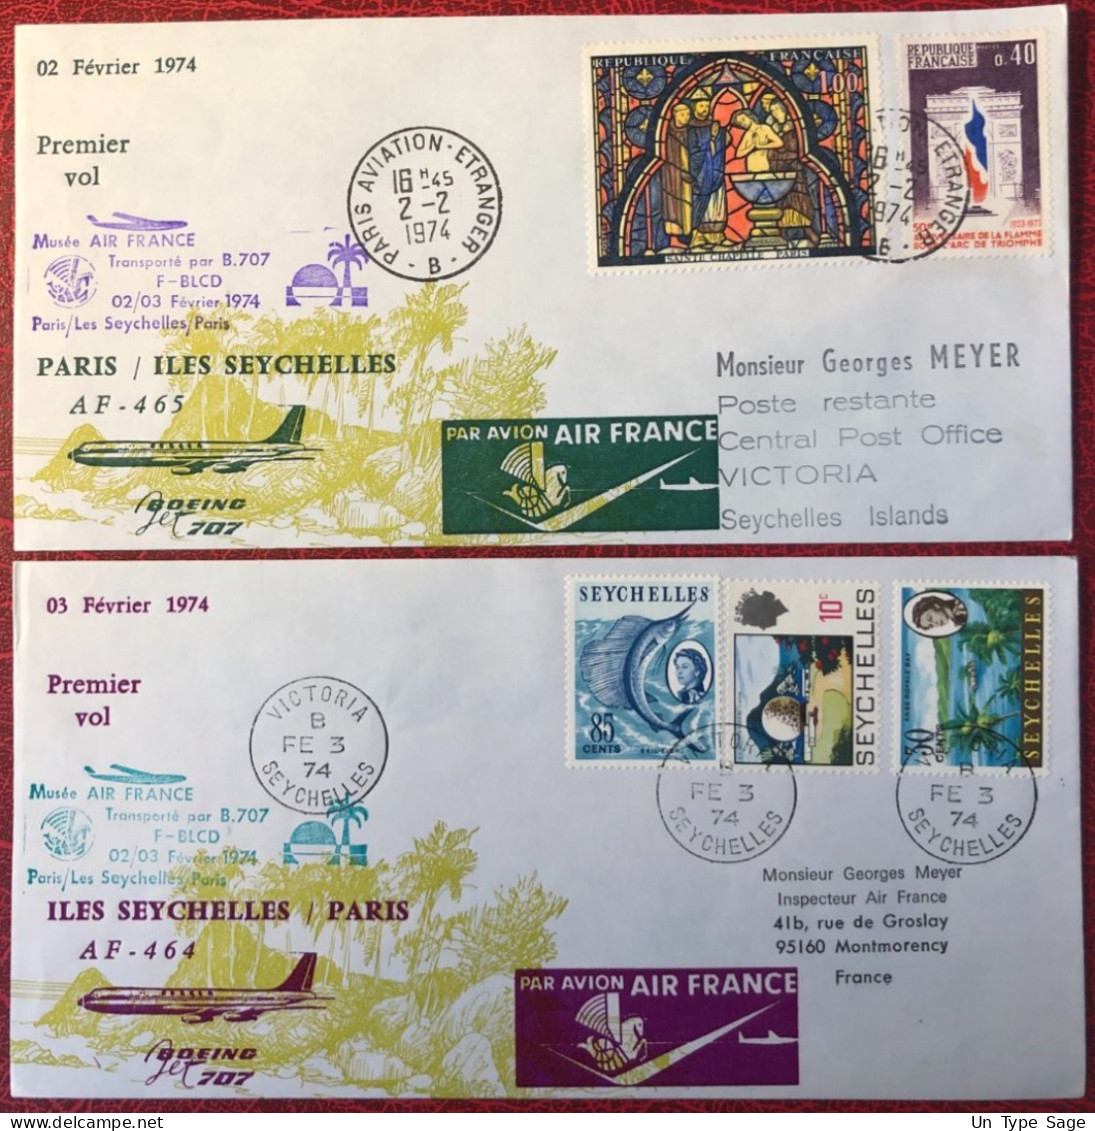 France, Premier Vol (Boeing 707) PARIS / ILES SEYCHELLES 2/3.2.1974 - 2 Enveloppes - (A1440) - Primi Voli